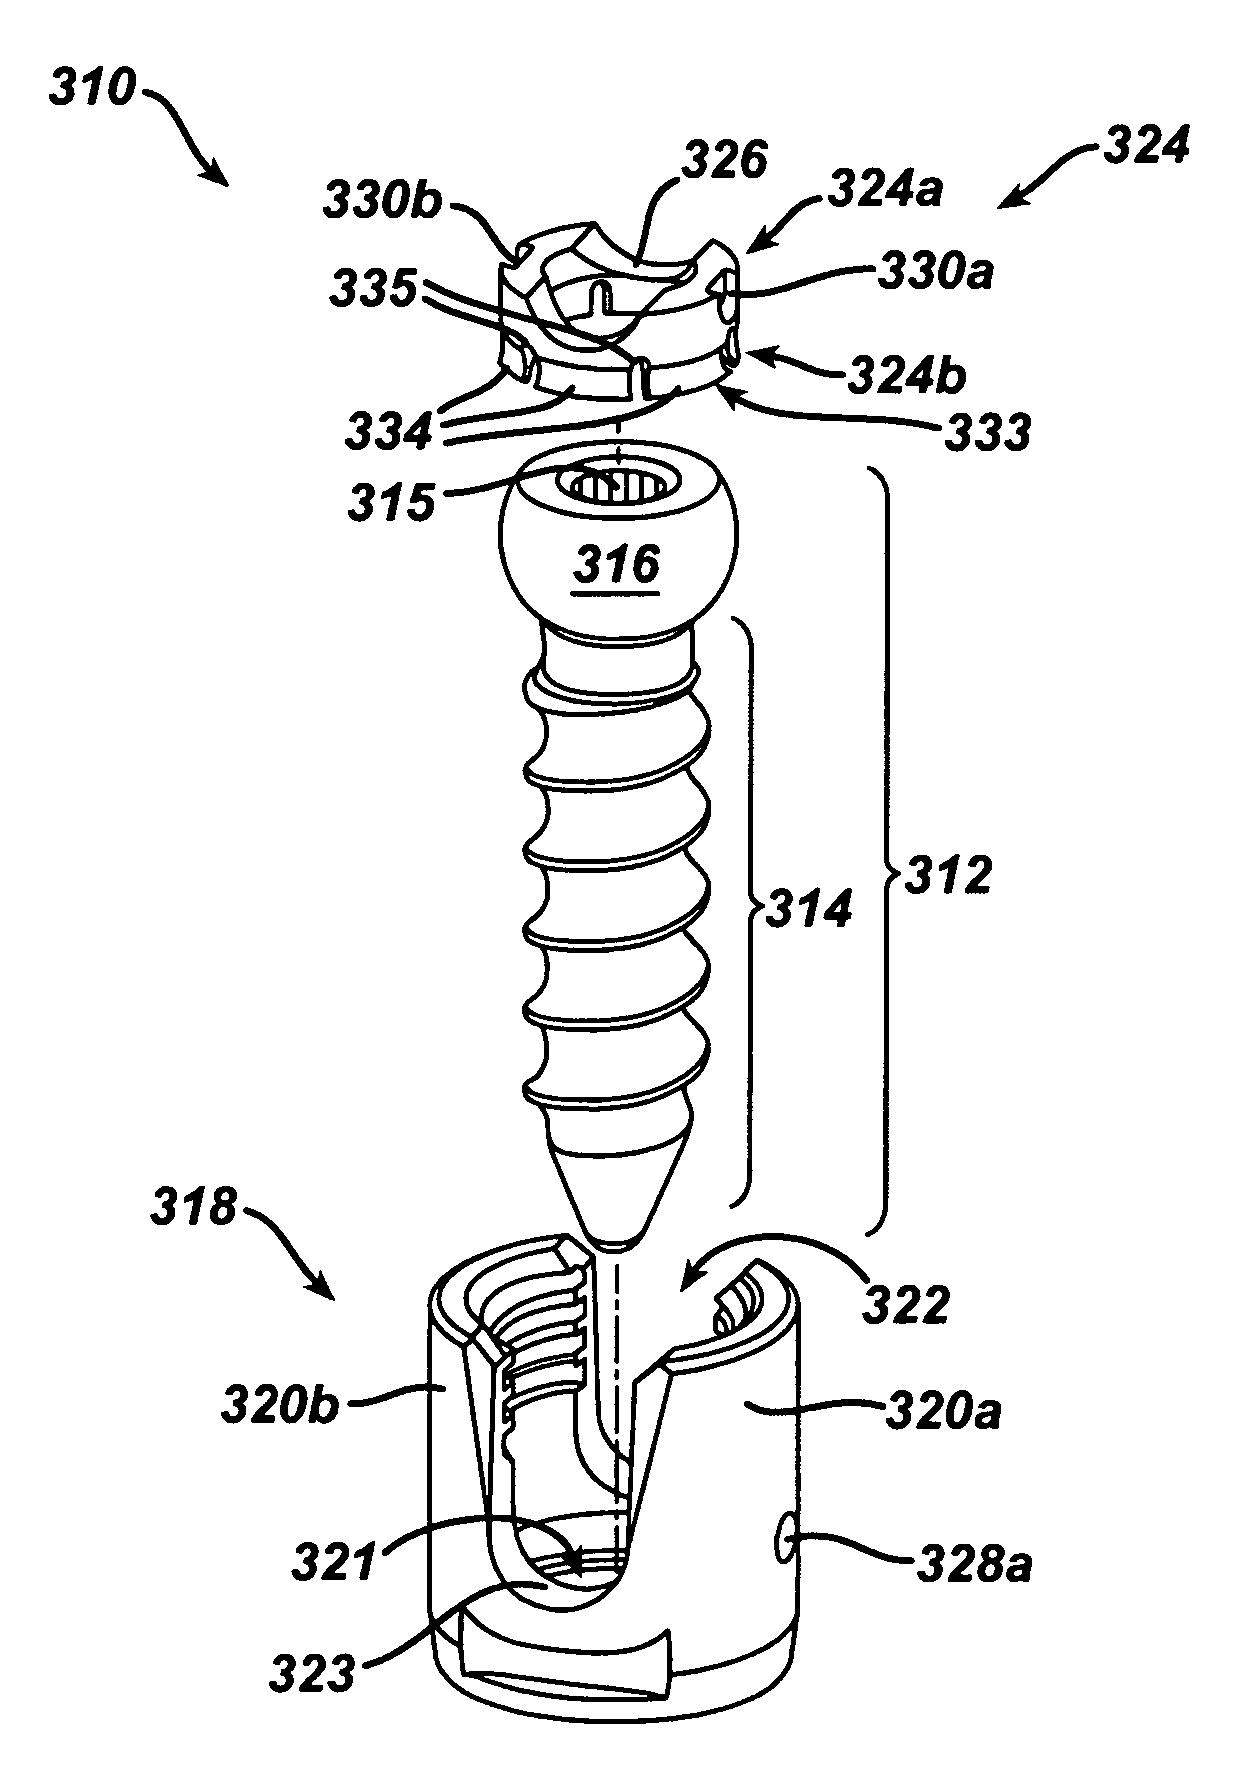 Polyaxial bone screw